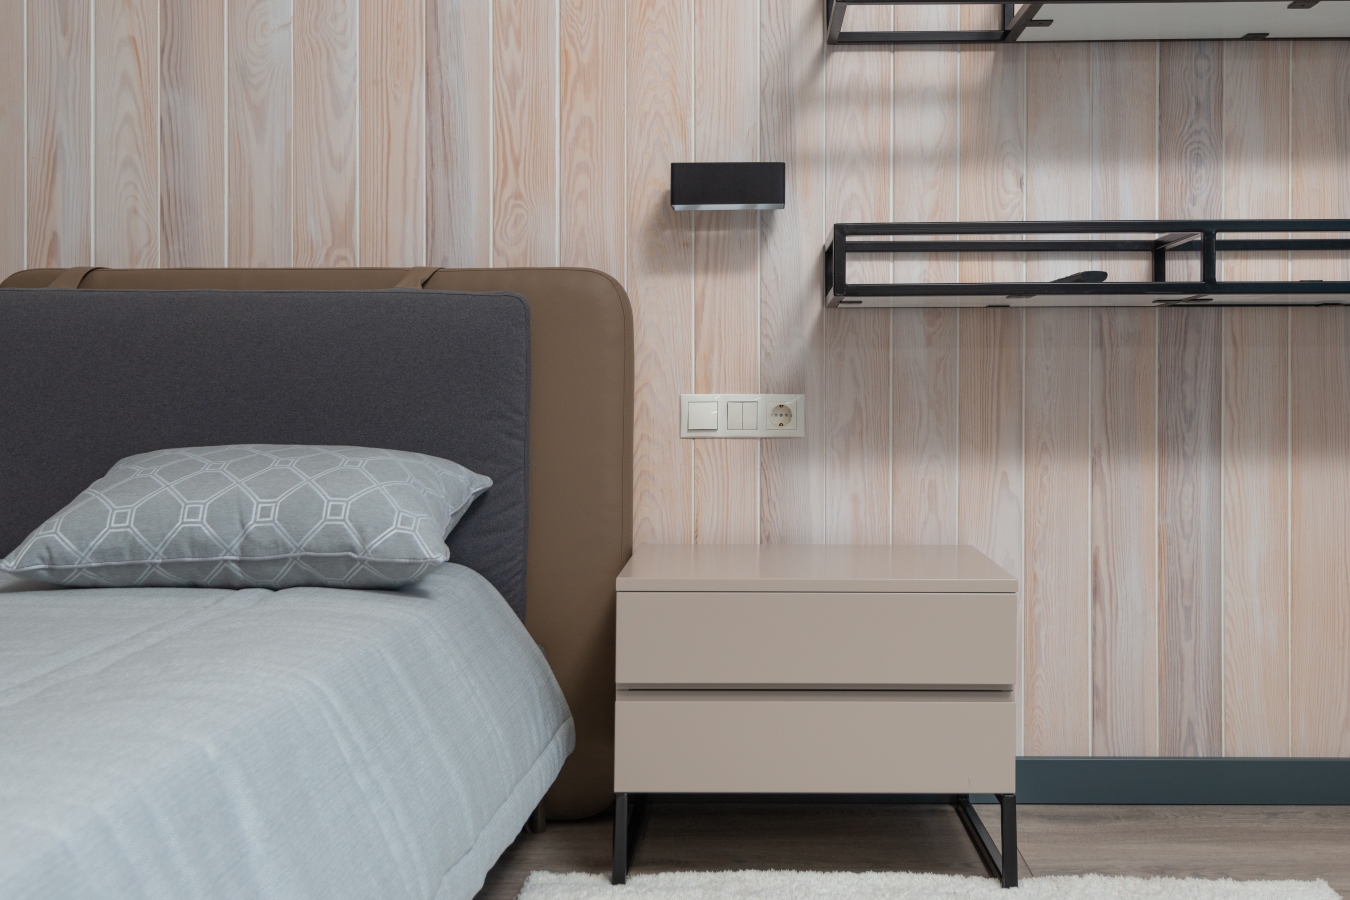 Sypialnia minimalistyczna: czyste kolory w gamie beżów i szarości, prosty stolik nocny bez uchwytów.